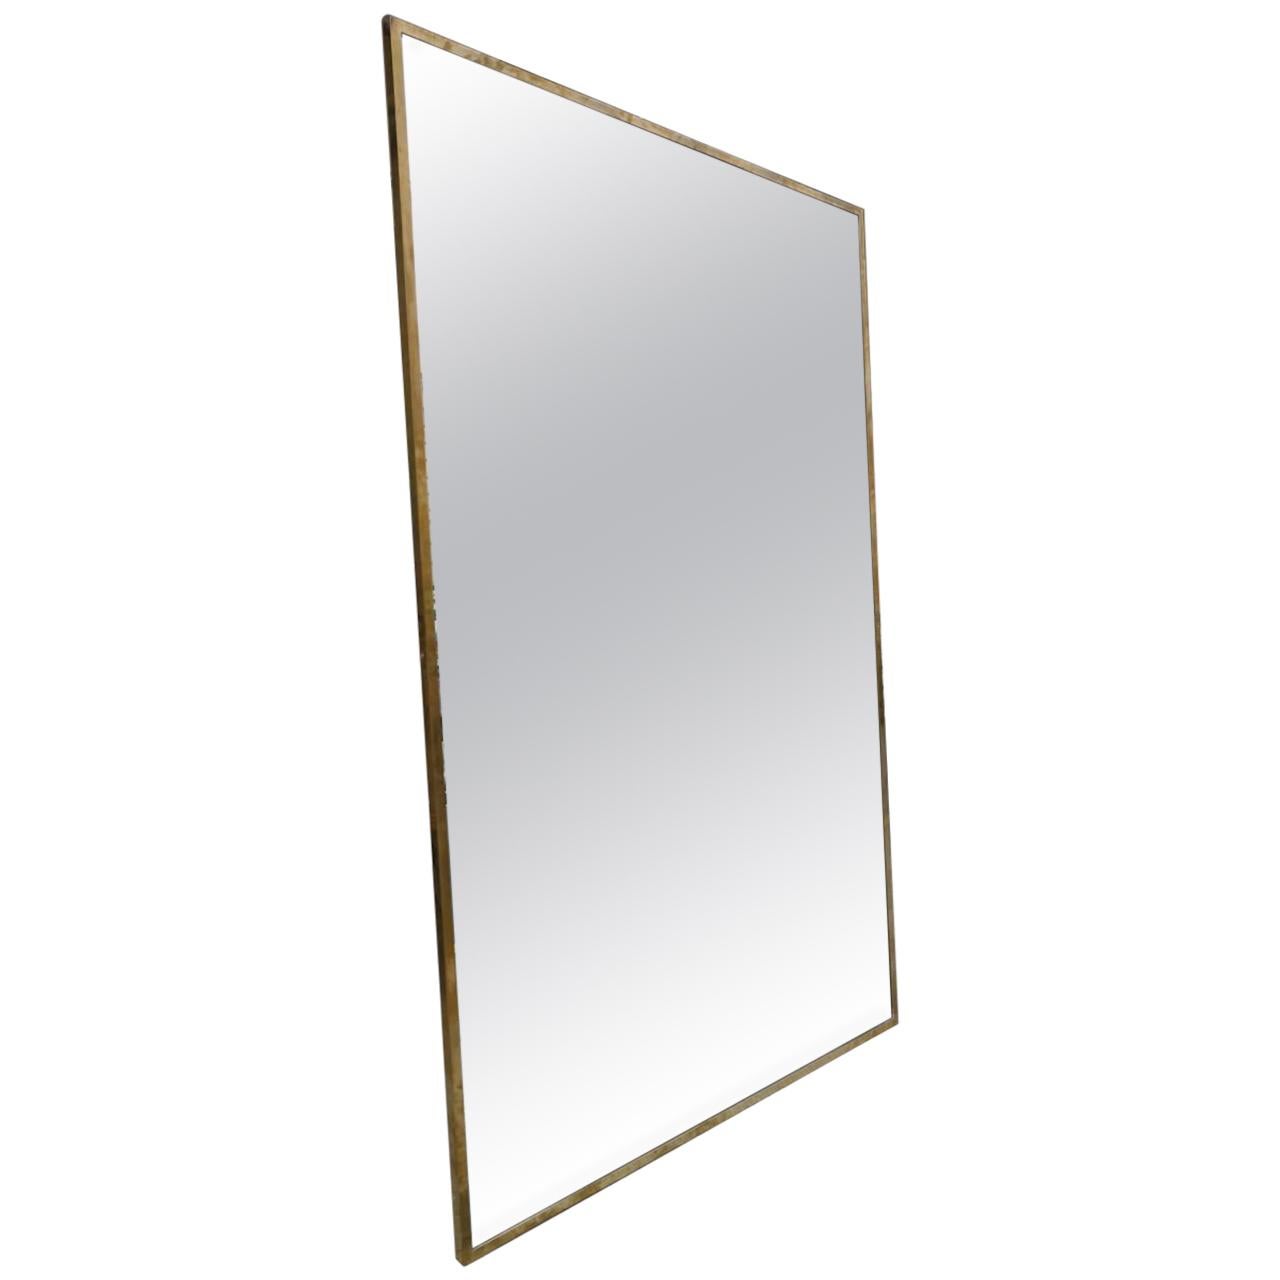 Stunning Midcentury Italian Brass Mirror